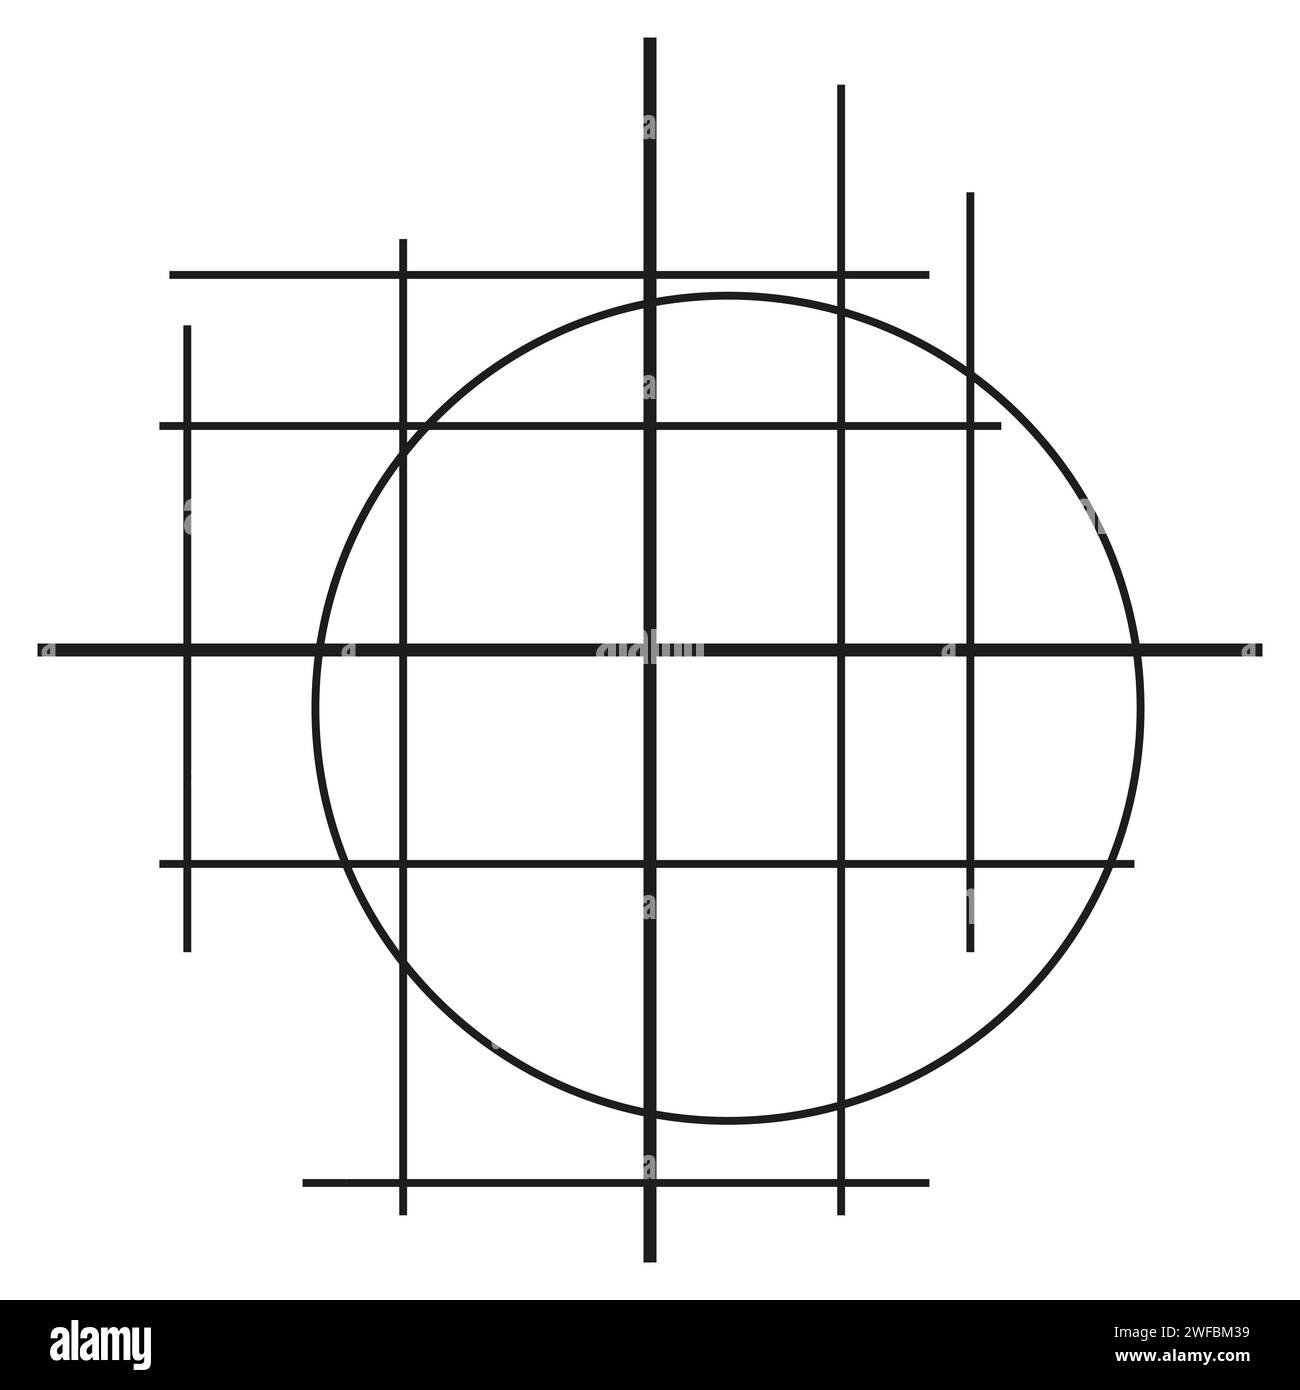 Hachures, cercles de lignes enchevêtrées. Illustration vectorielle. SPE 10. Image de stock. Illustration de Vecteur